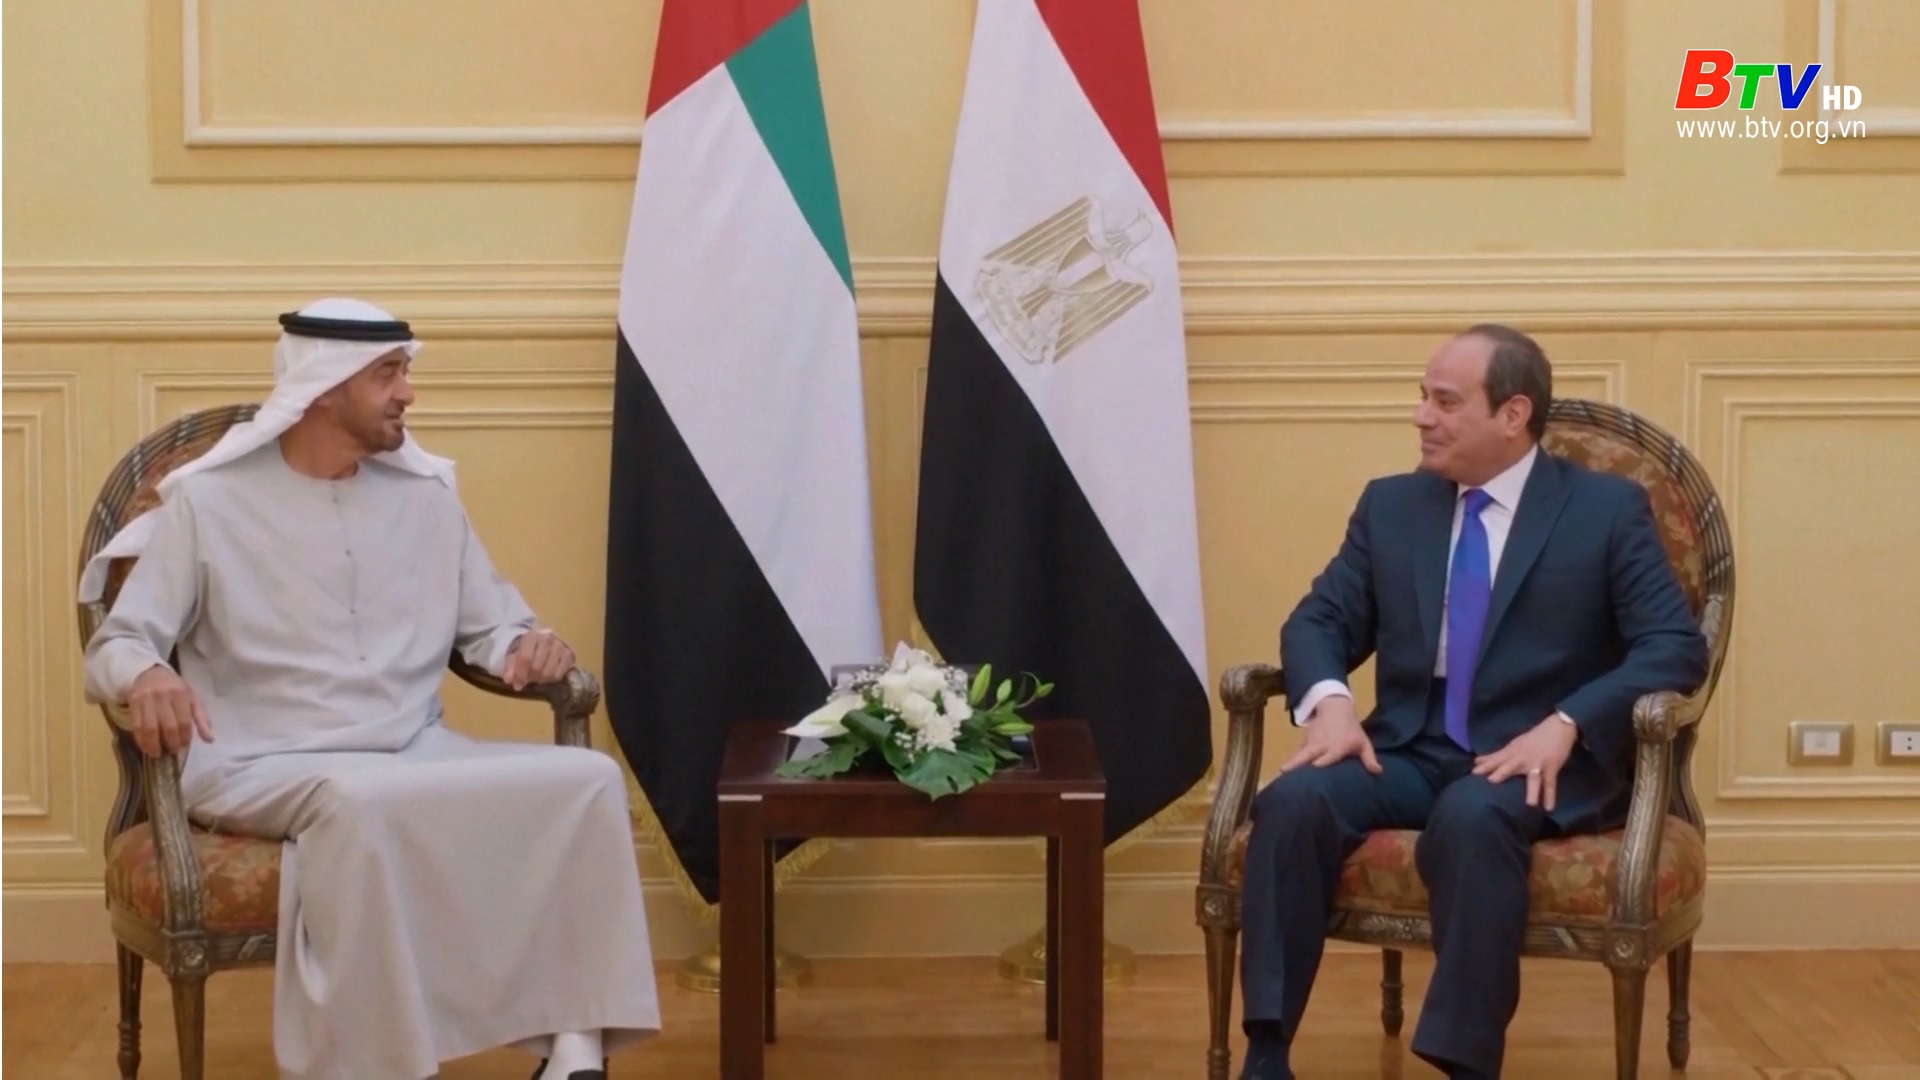  Ai Cập - UAE thúc đẩy hệ thống hành động chung ARAB